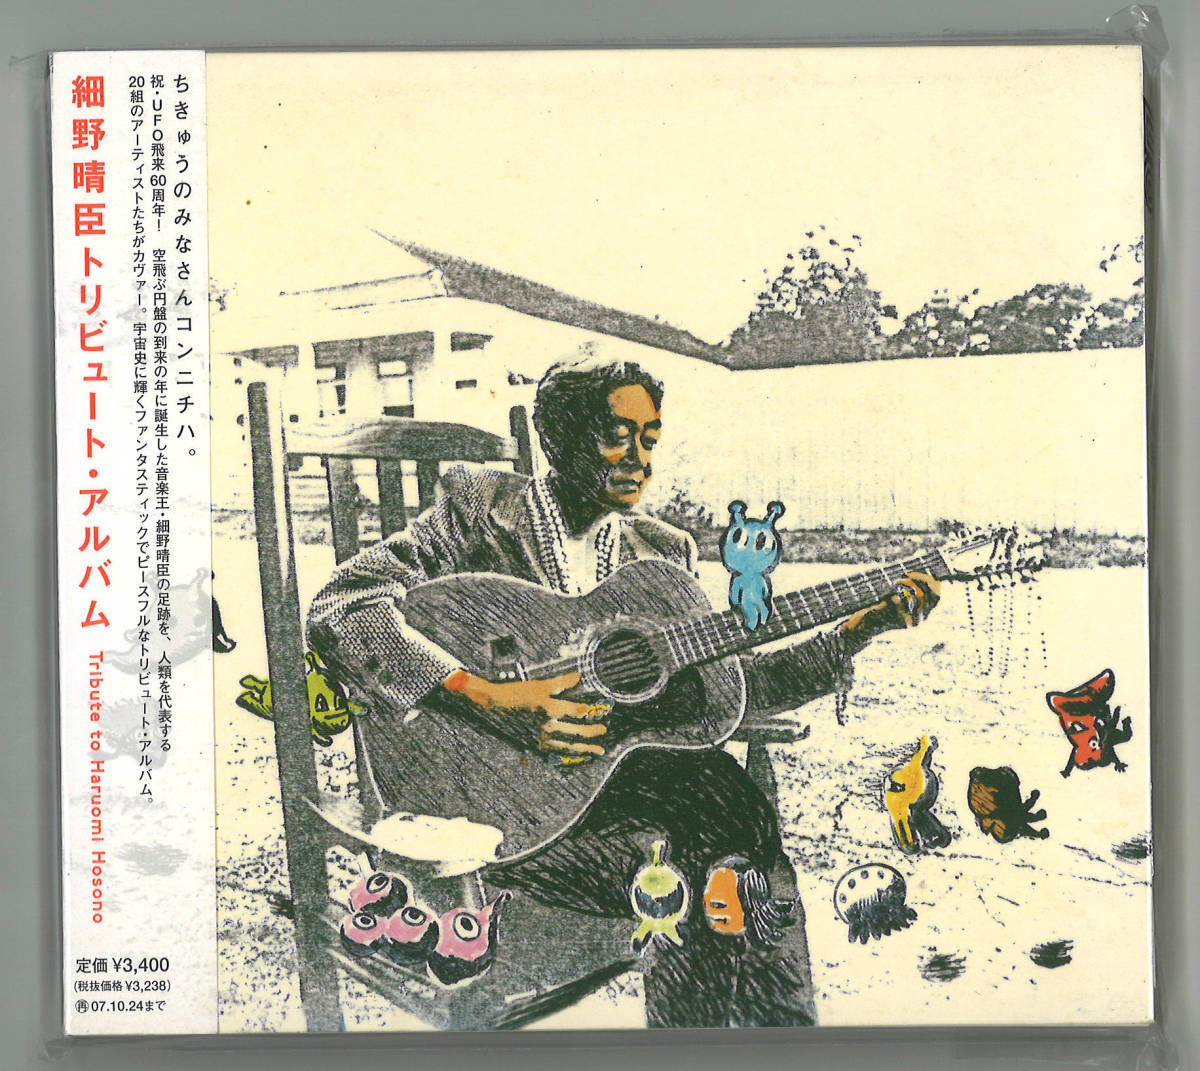 2CD / 細野晴臣トリビュート・アルバム / Tribute to Haruomi Hosonoの画像1